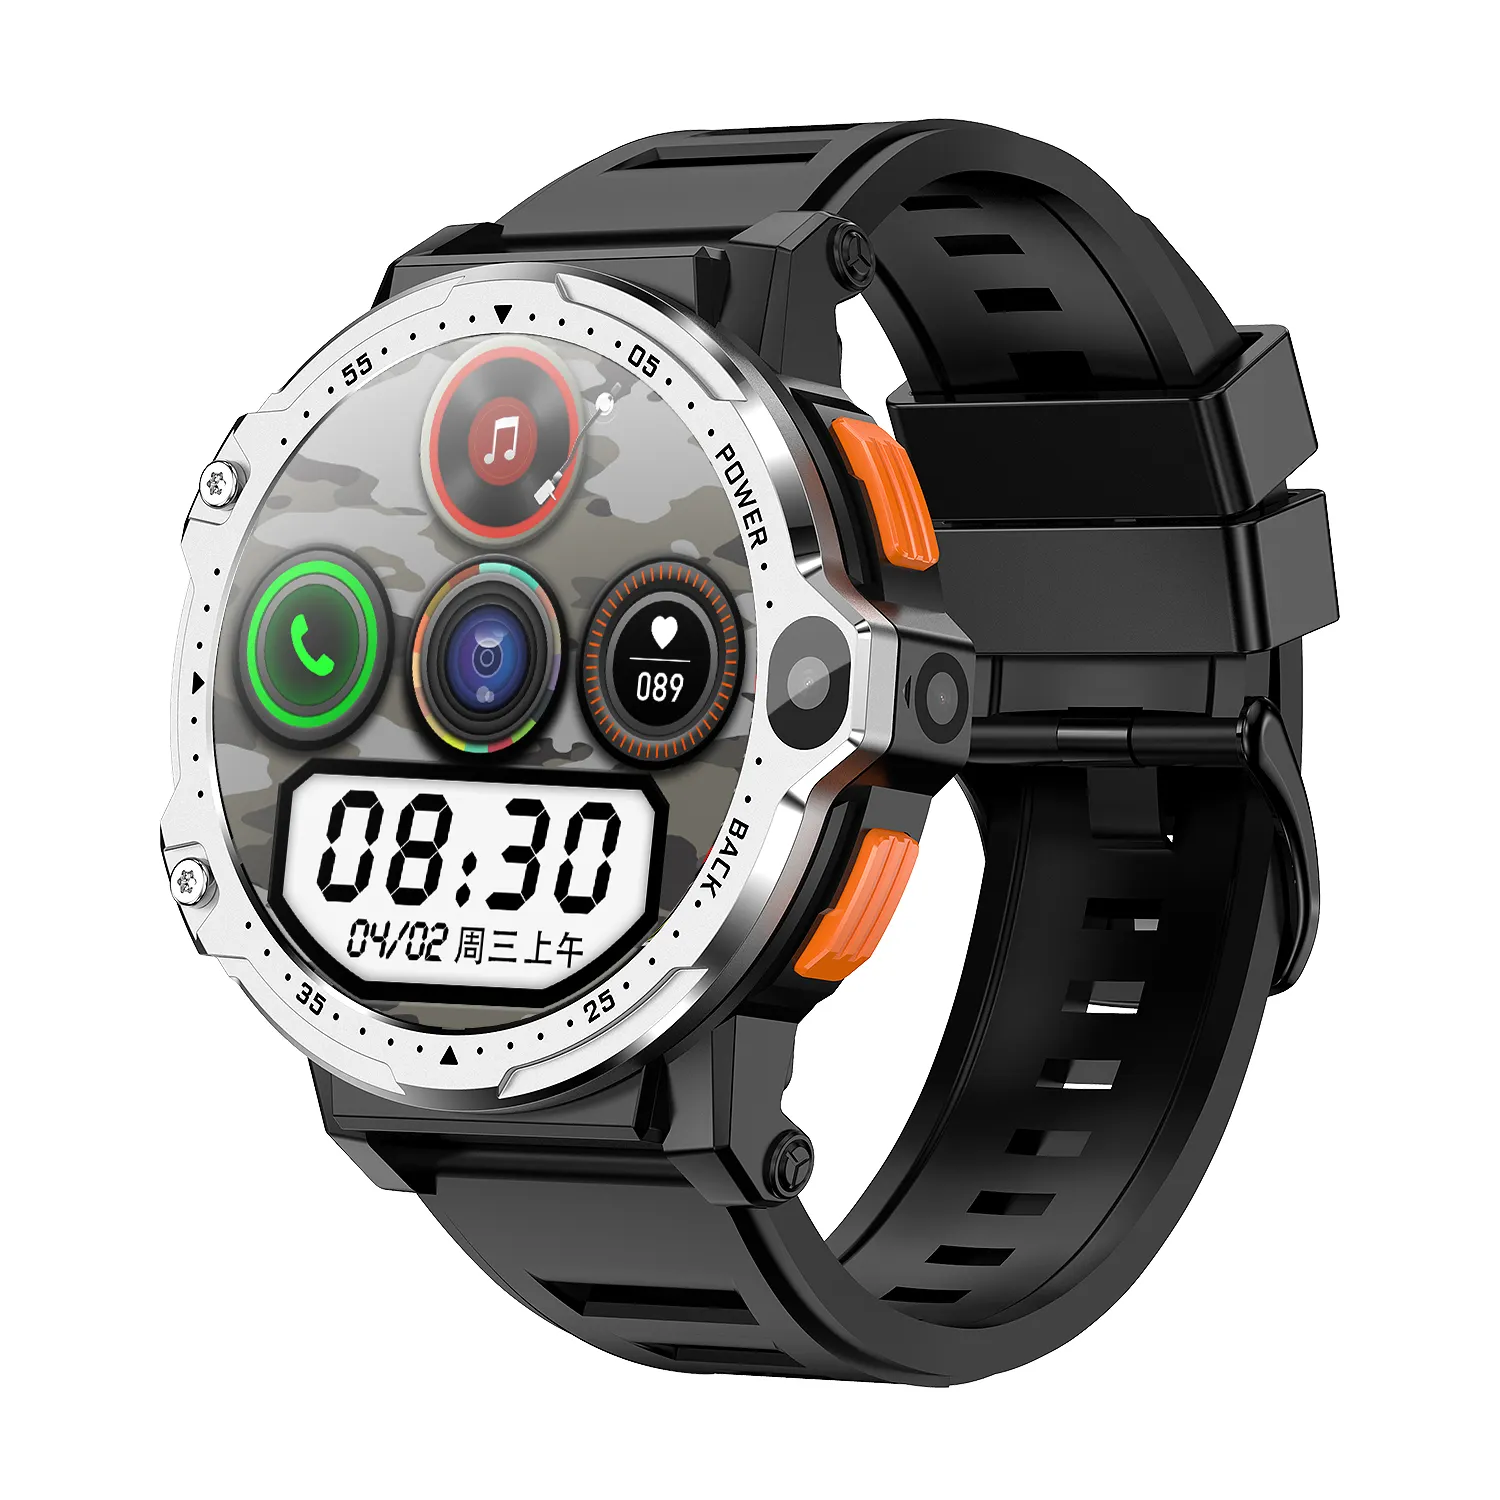 GAOKE PG999 Smart Watch With 4G Sim Card PG999 smartwatch Touch Screen camera Wifi GPS Smart Watch Sim Card 800mAh Watch Phone